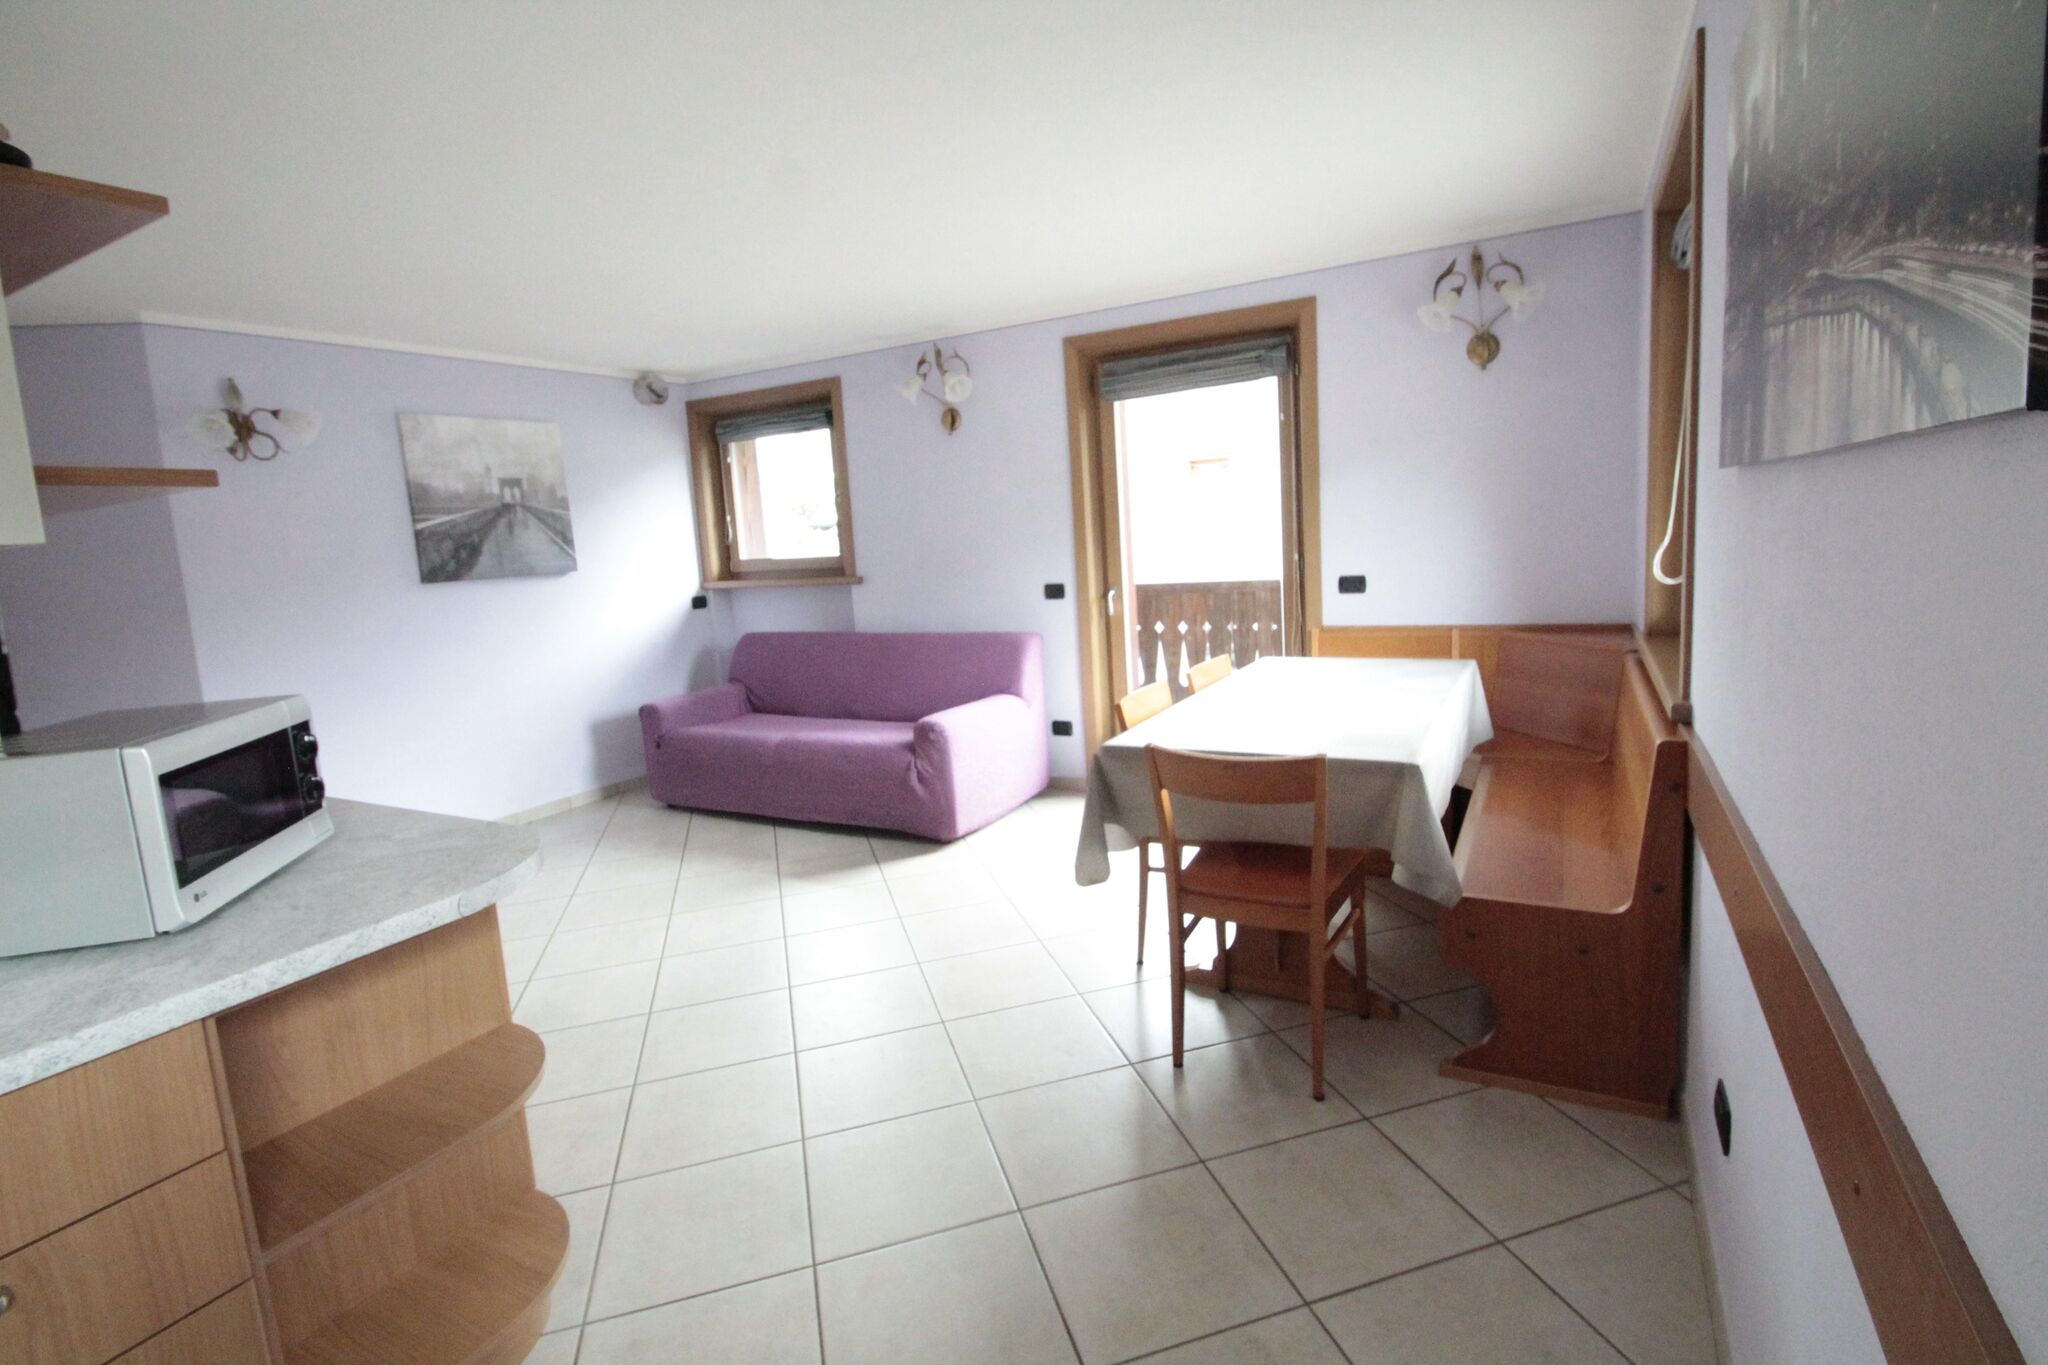 Apartment in Livigno, near the ski area